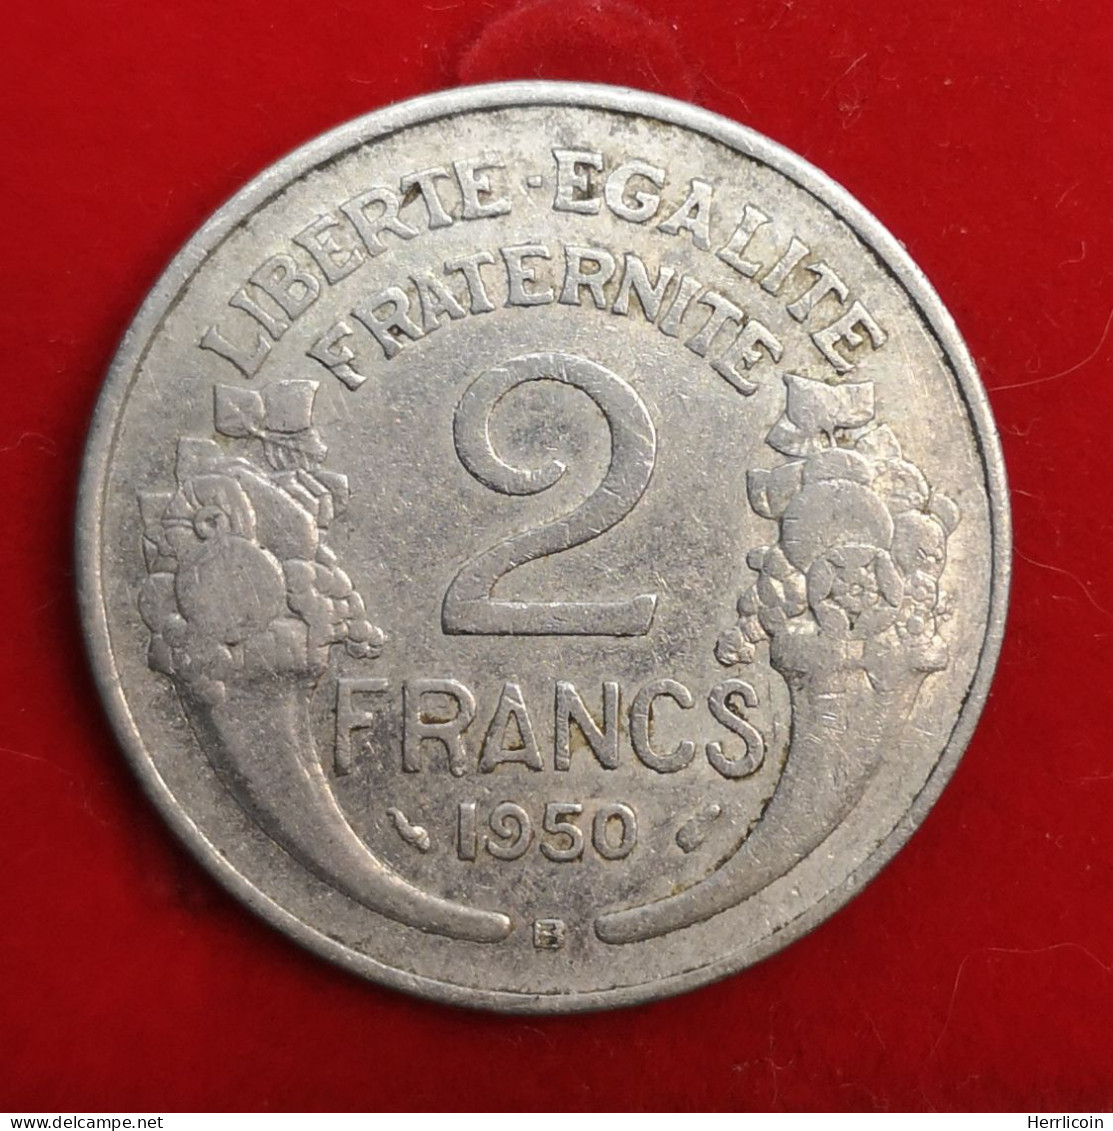 1950 B - 2 Francs Morlon Aluminium-magnésium - France - 2 Francs